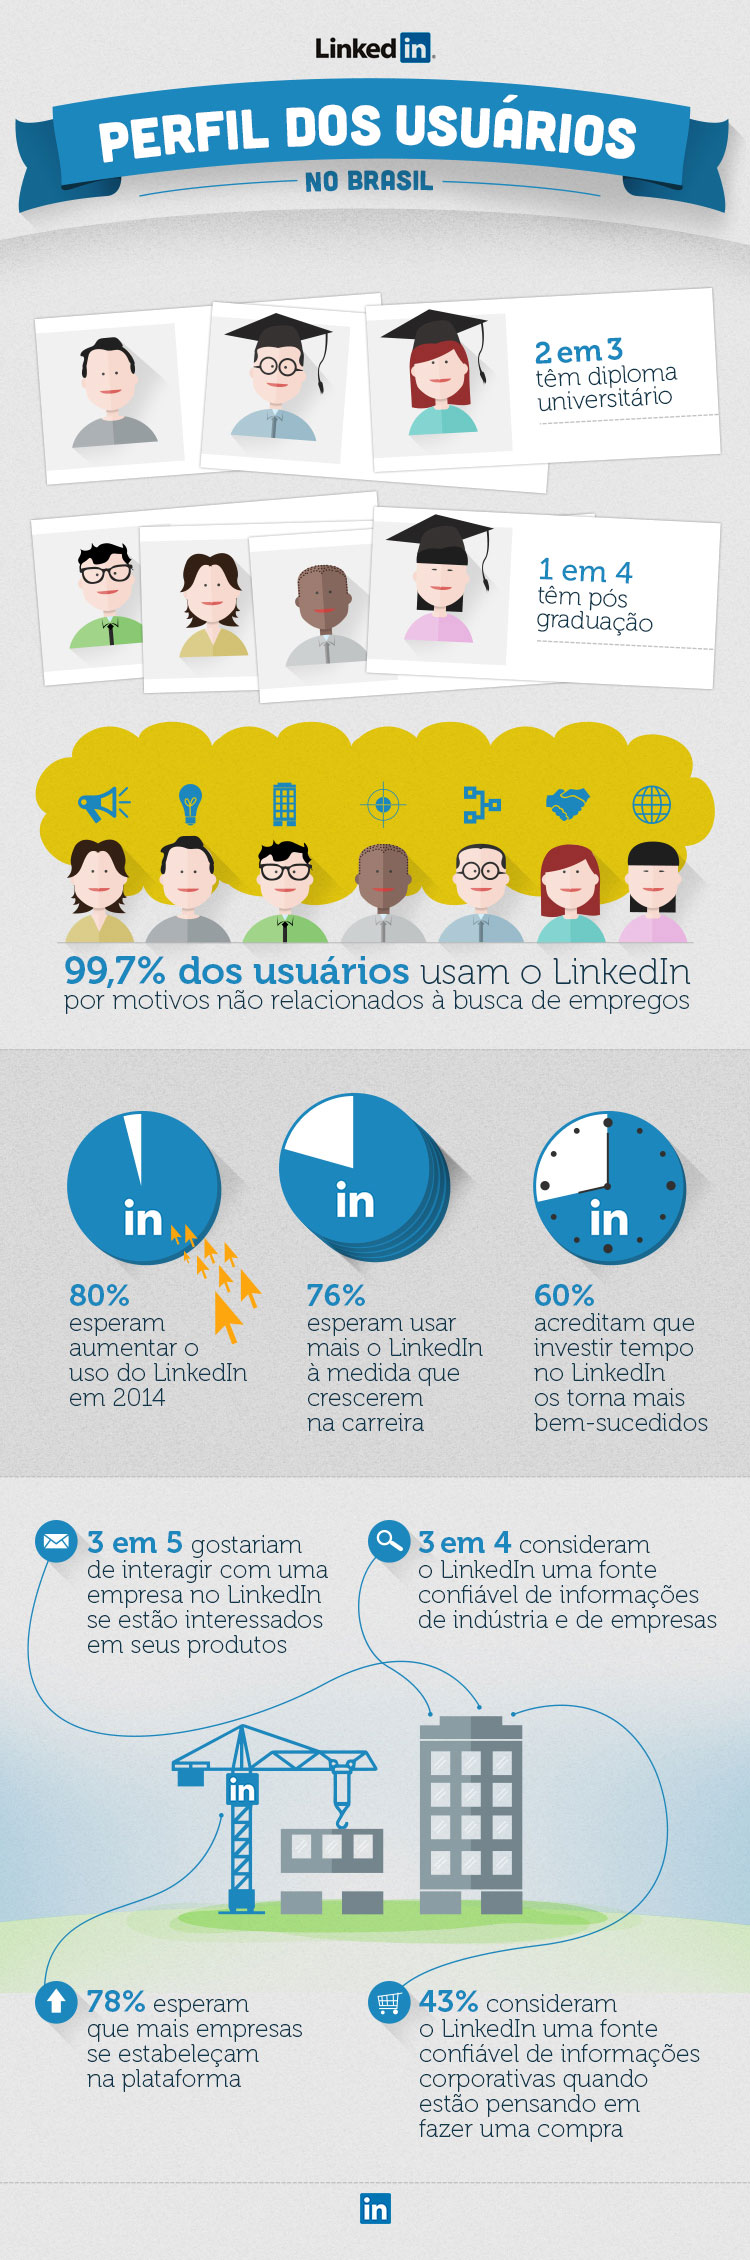 LinkedIn-Que-tipo-de-profissional-usa-o-LinkedIn-no-Brasil